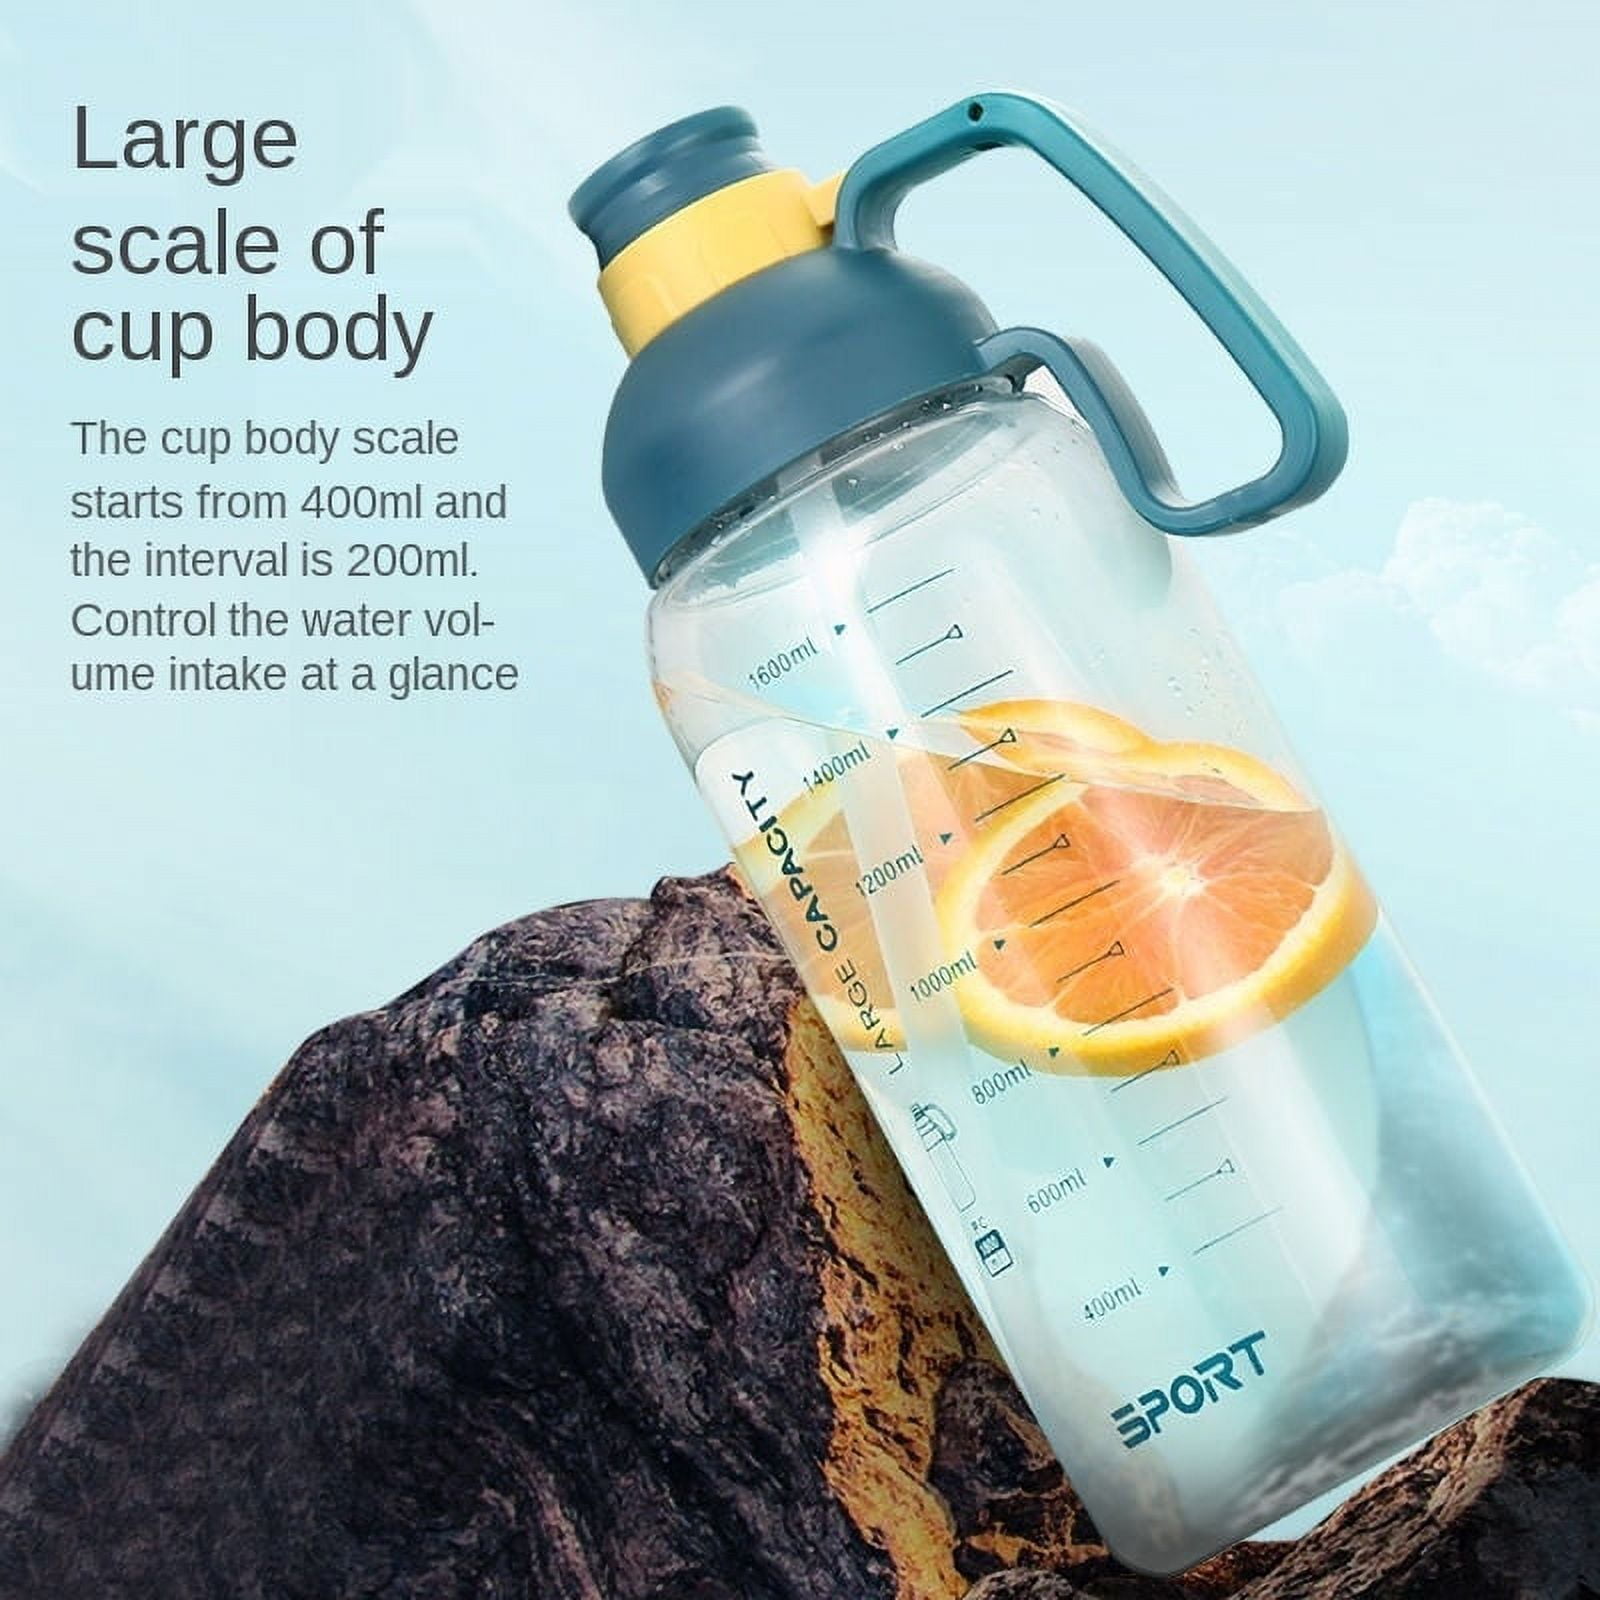 60 PC Bulk Plastic Sport Water Bottles 7 18 oz